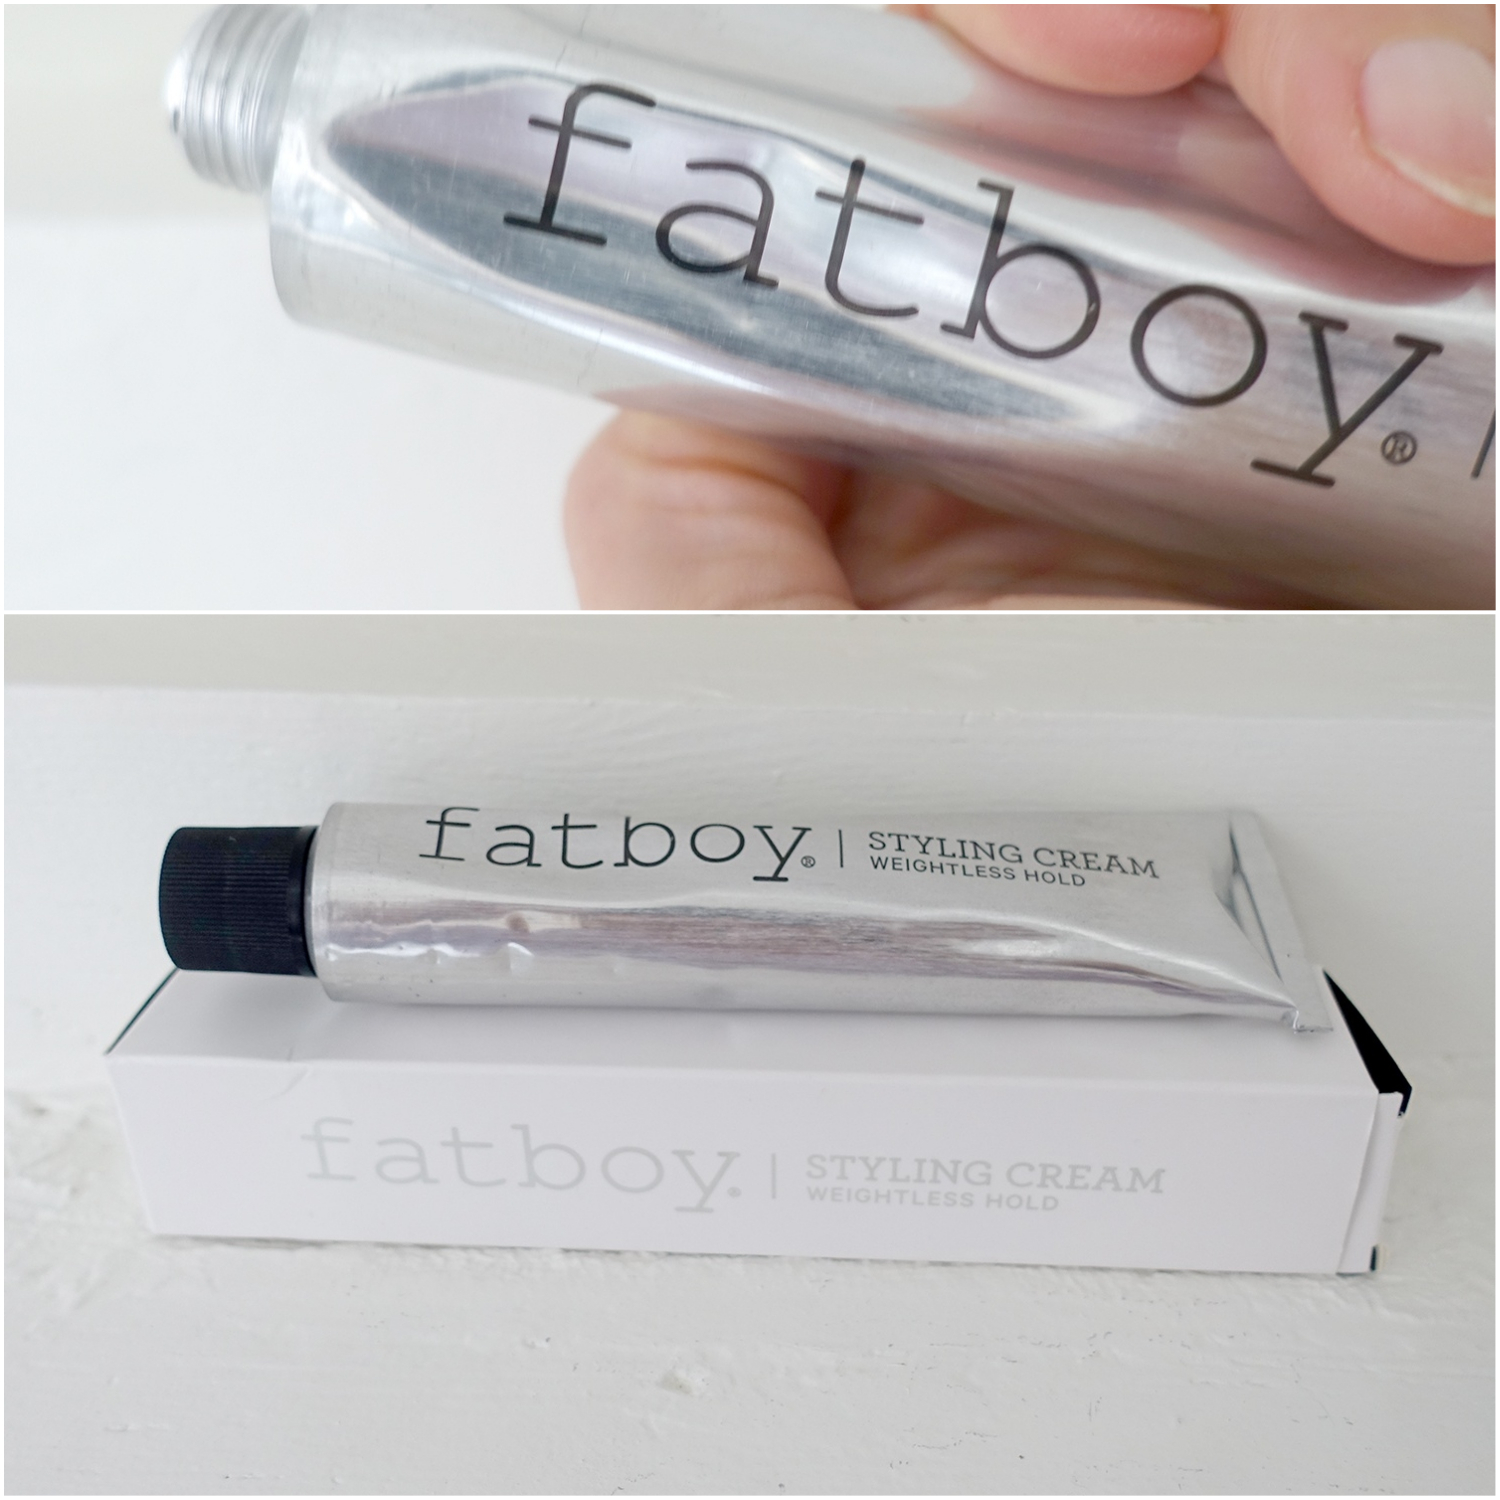 Fatboy-styling-cream-04